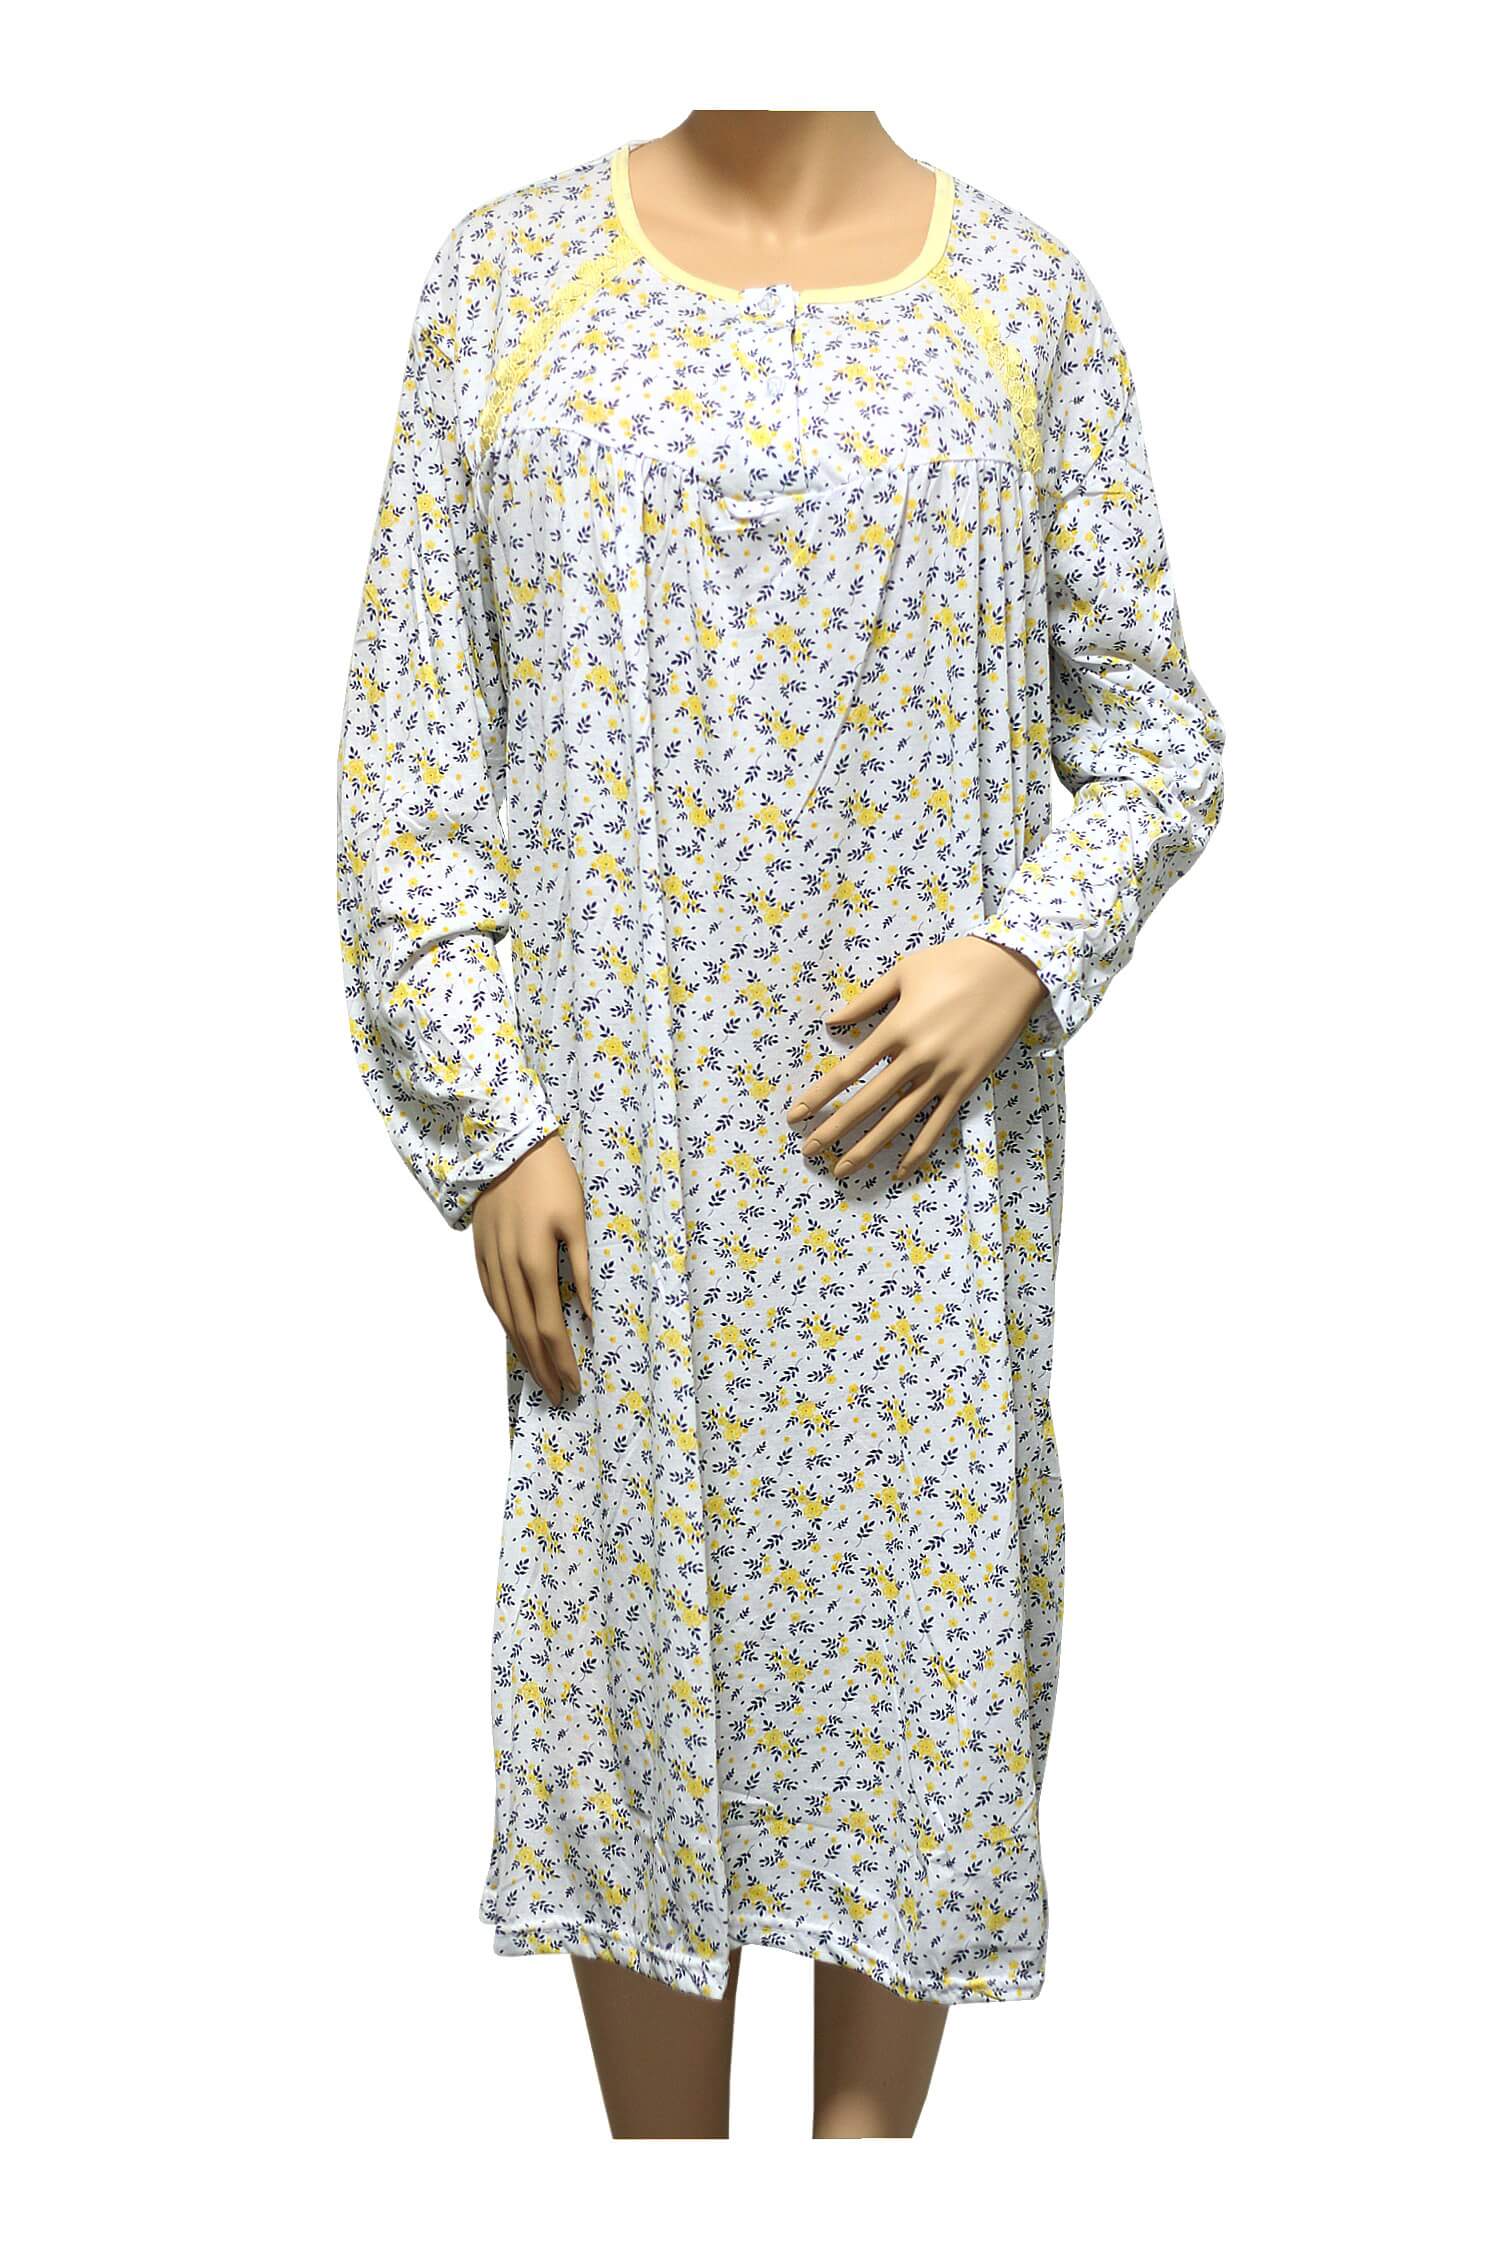 Karina dámská noční košile 1008 XL žlutá